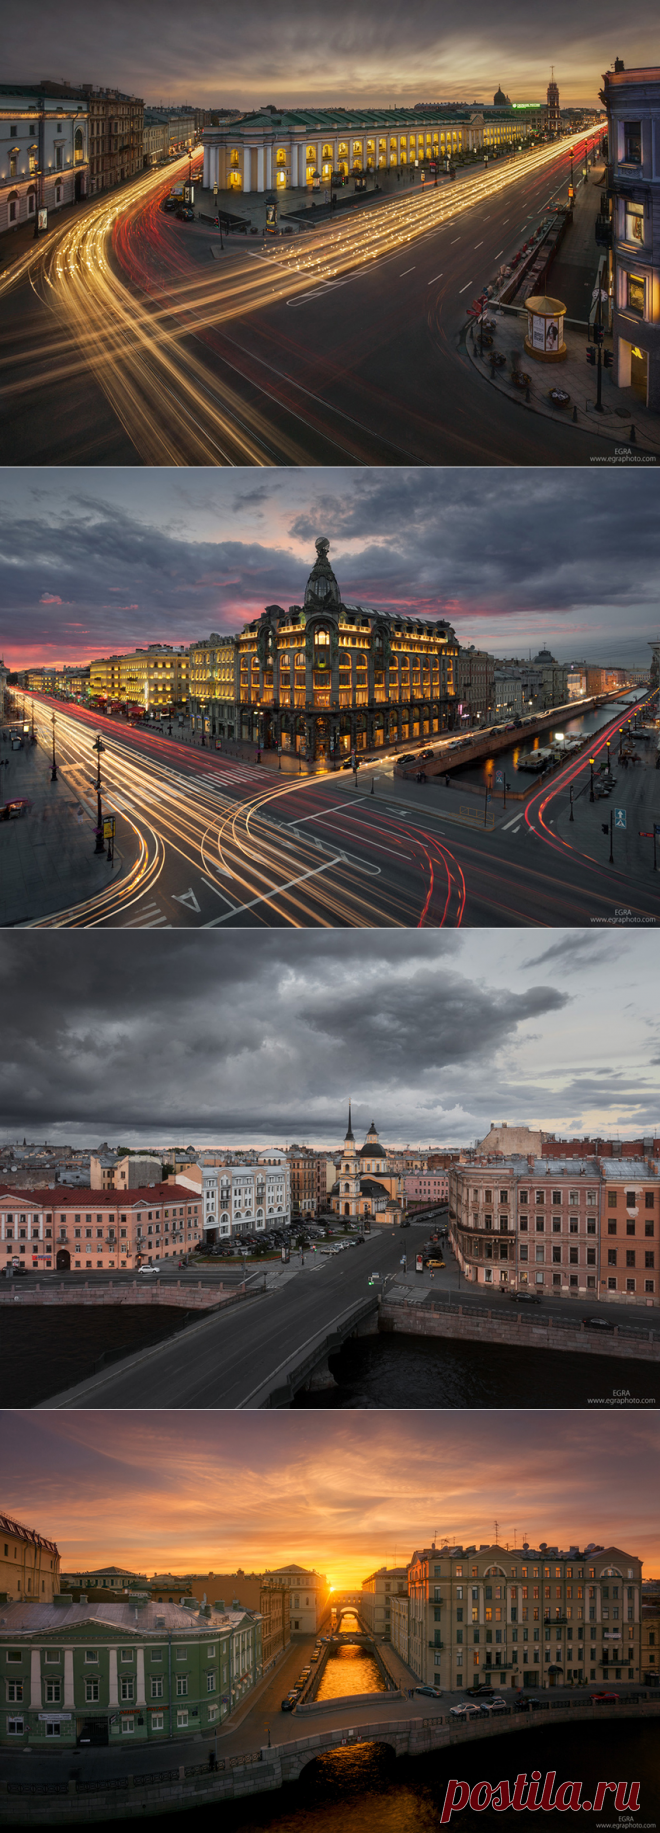 Петербург как будто на параде, одетый в реки, площади, дворцы. 